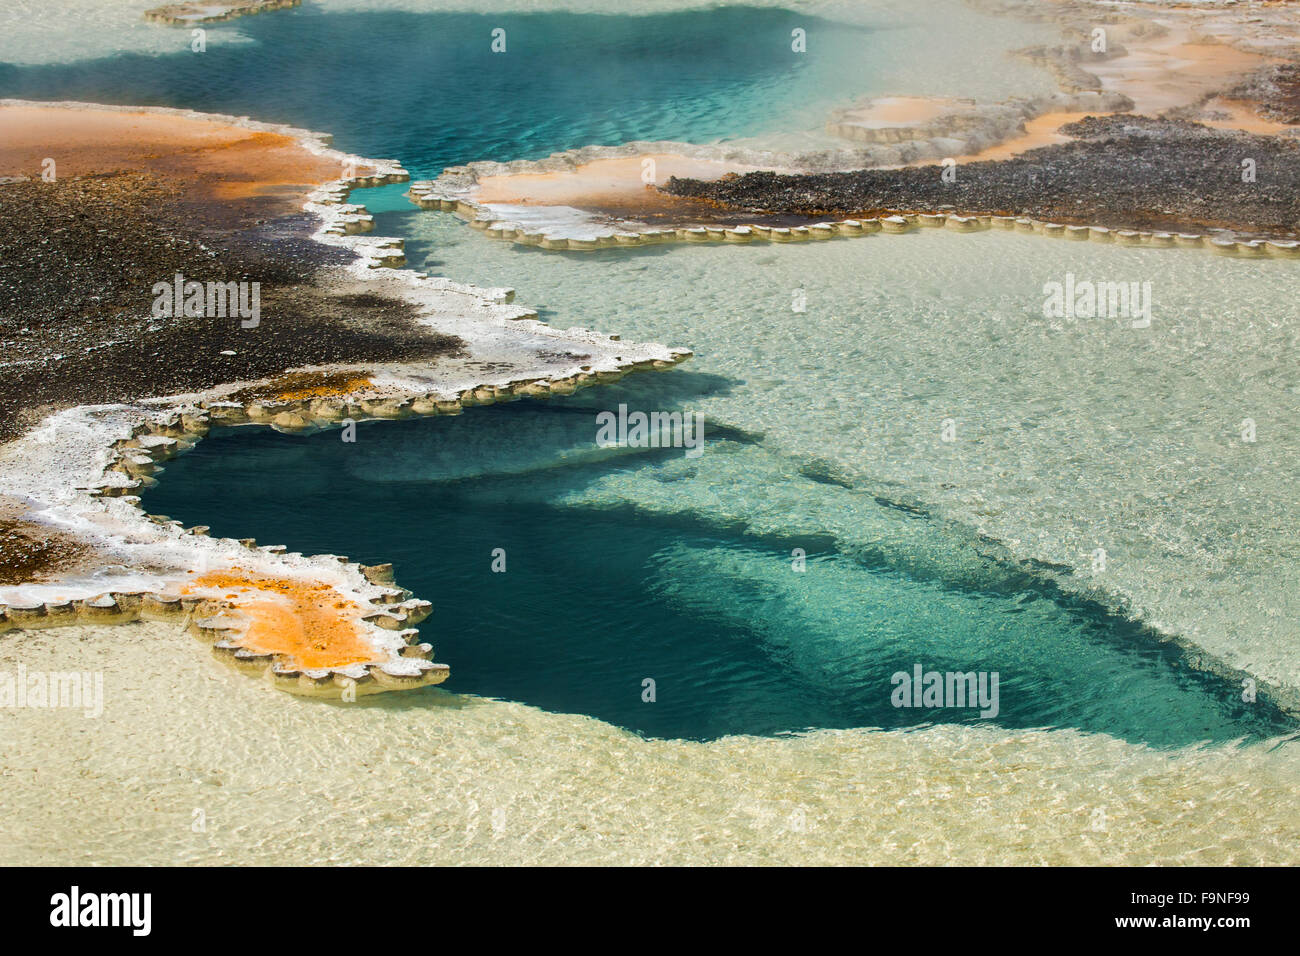 Profondo blu Aqua pool di una primavera calda, con margini di colore arancione e la nebbia di vapore in una area geotermale della caldera di Yellowstone. Foto Stock